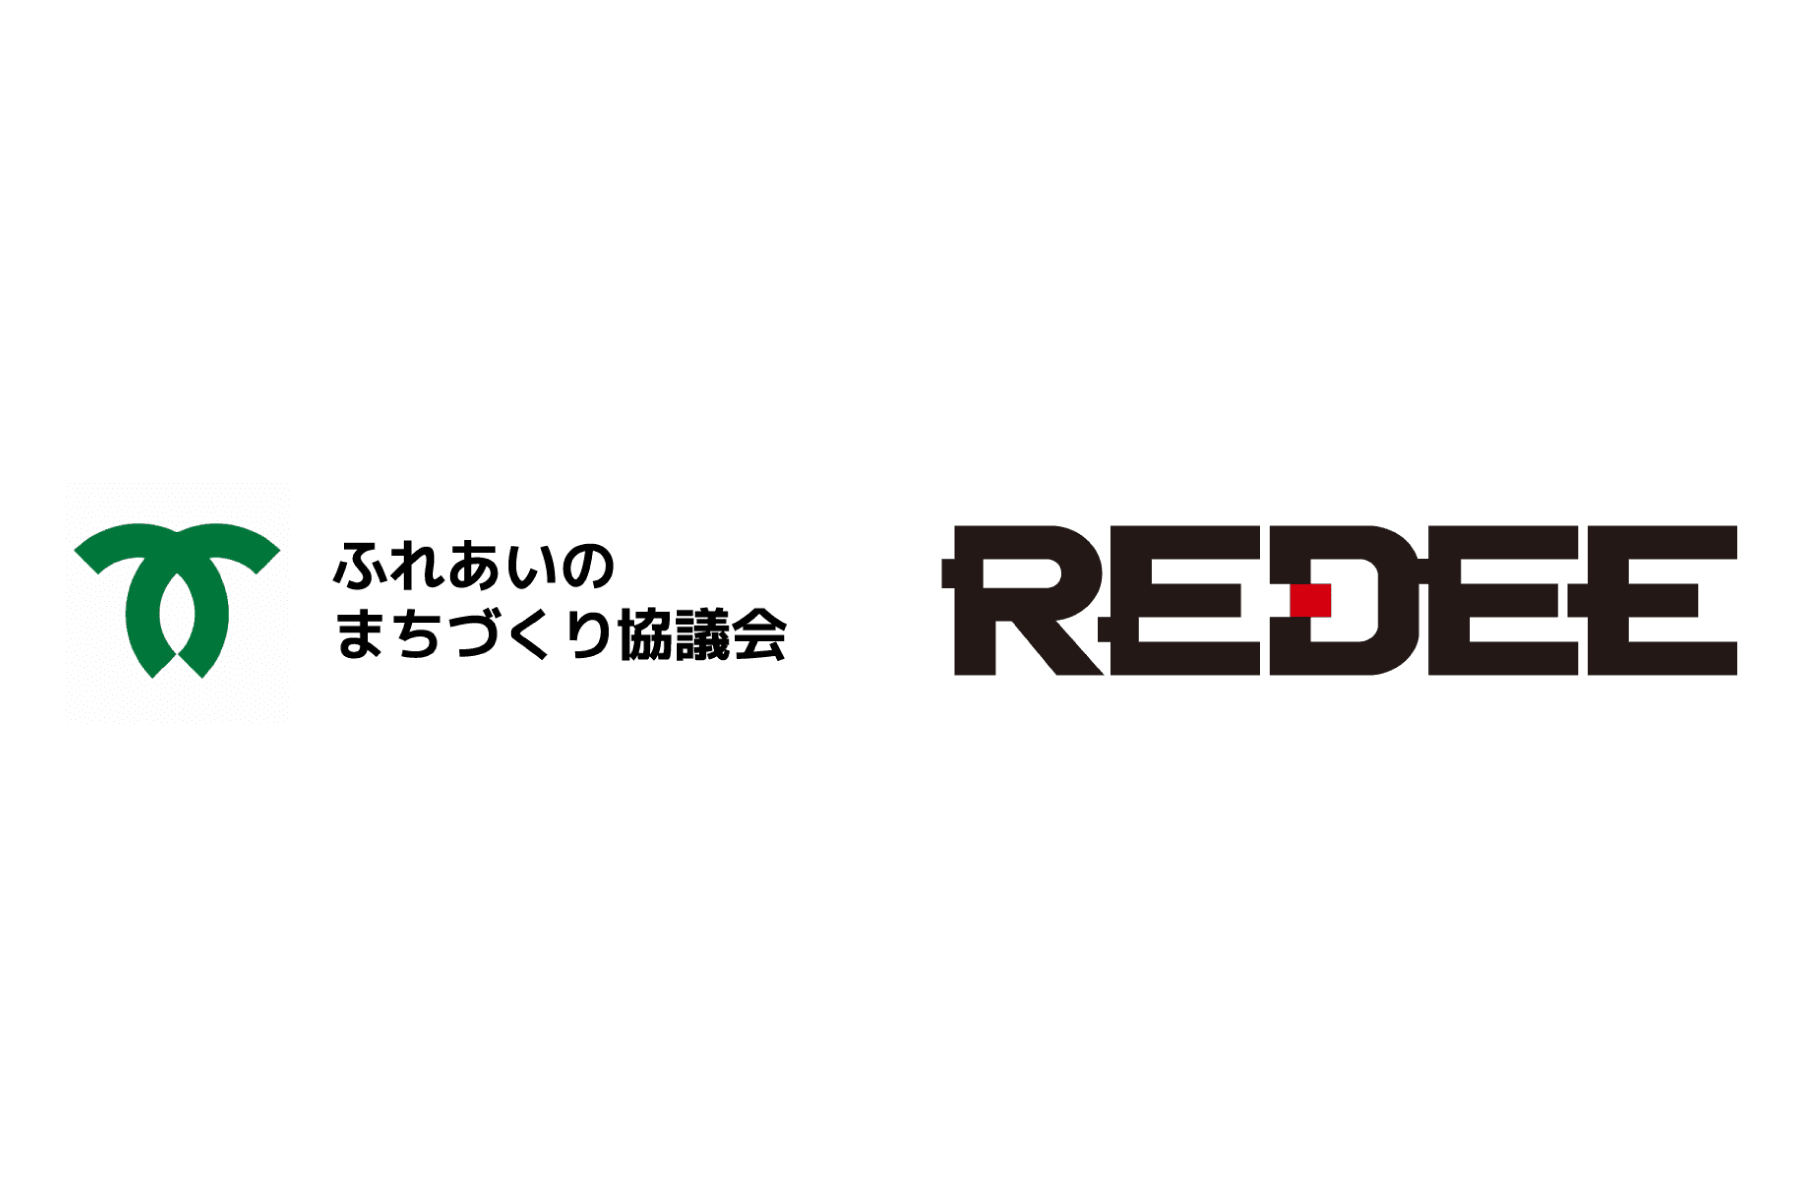 神戸市地域福祉センター×REDEE（レディー）「YouTuber体験会」「LEGOプログラミング体験会」を開催しました。